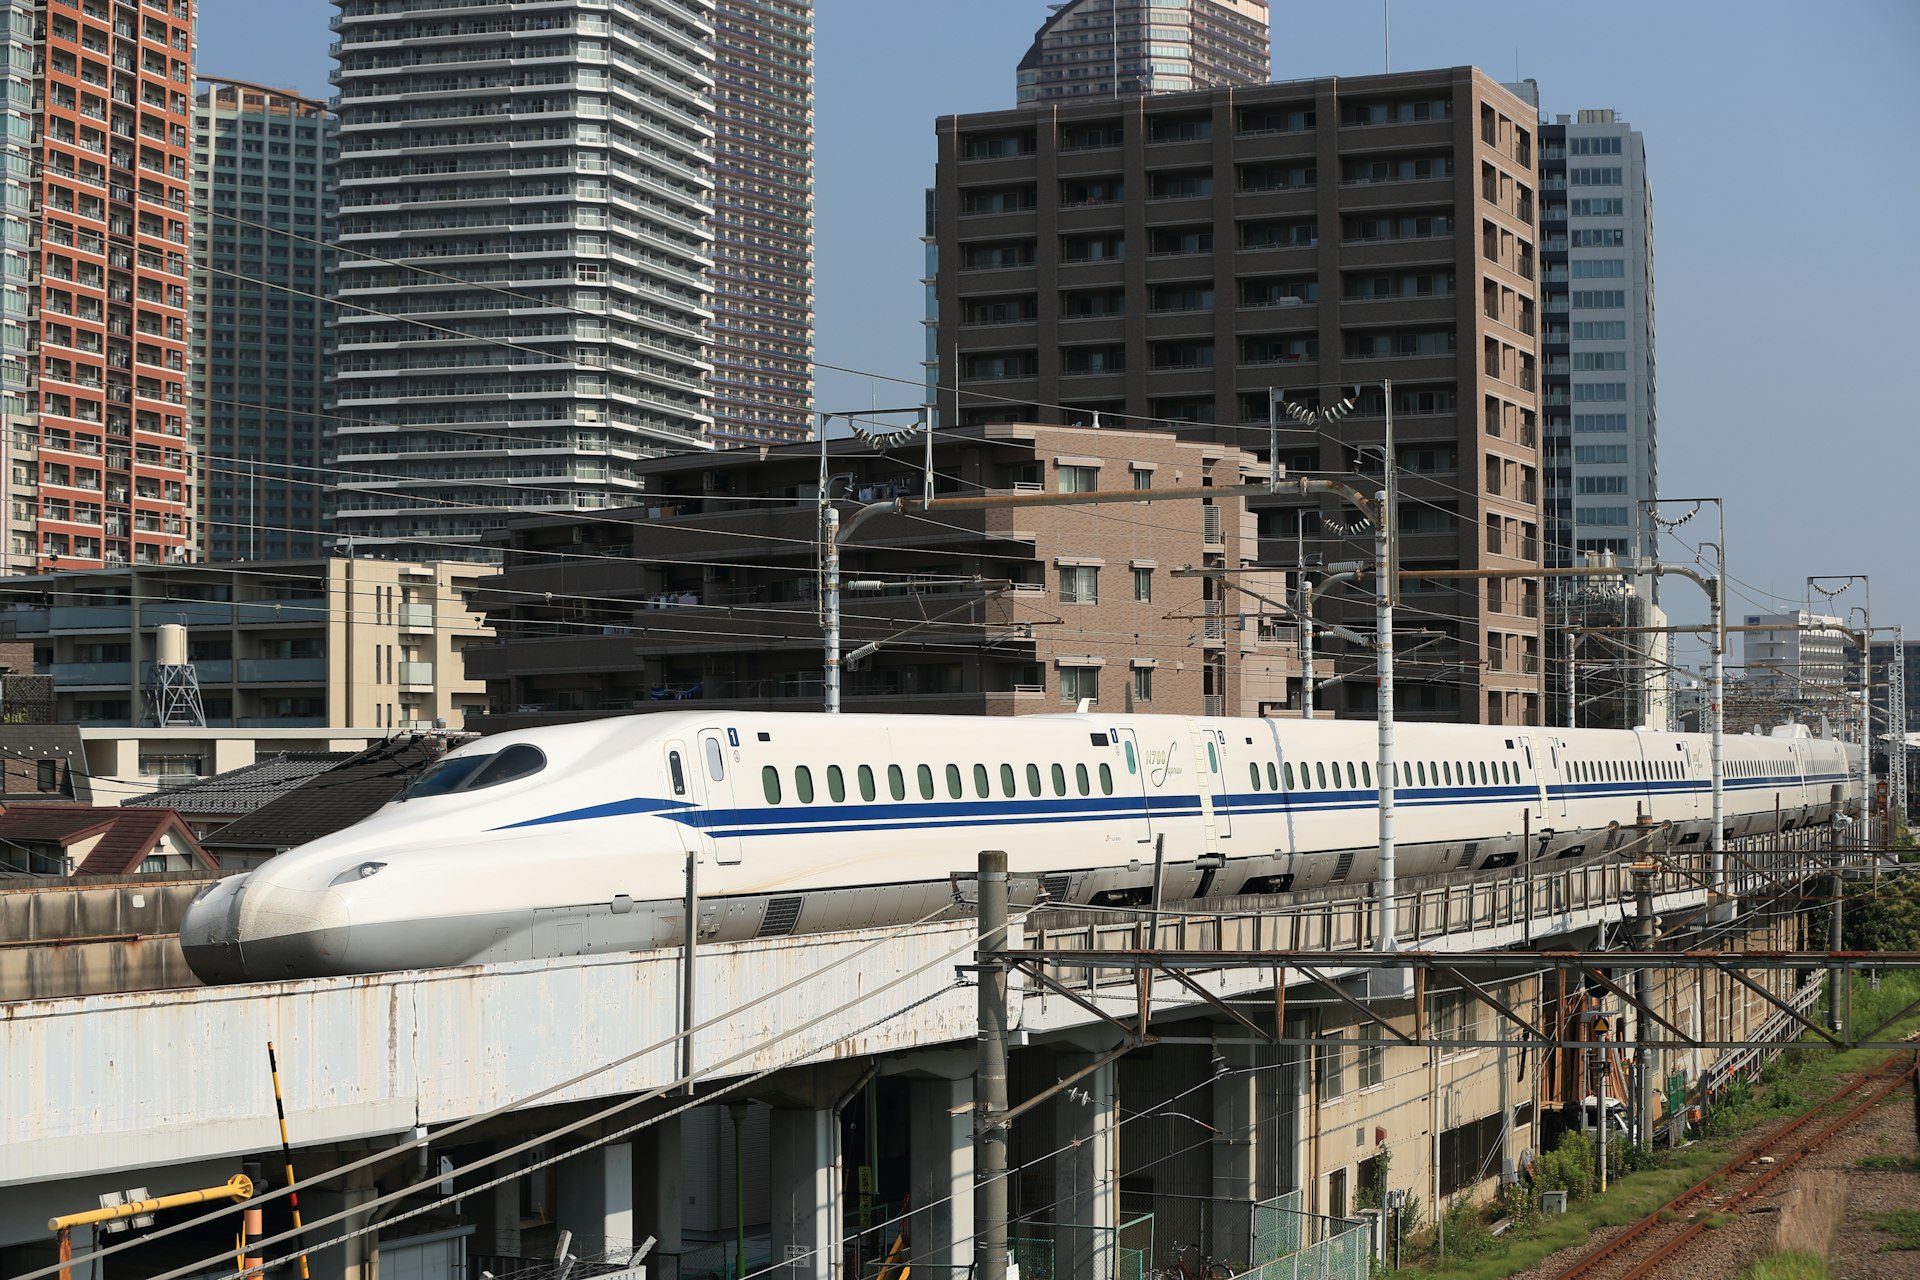 A N700S Shinkansen bullet train test runs between Shinagawa and Shin-Yokohama station